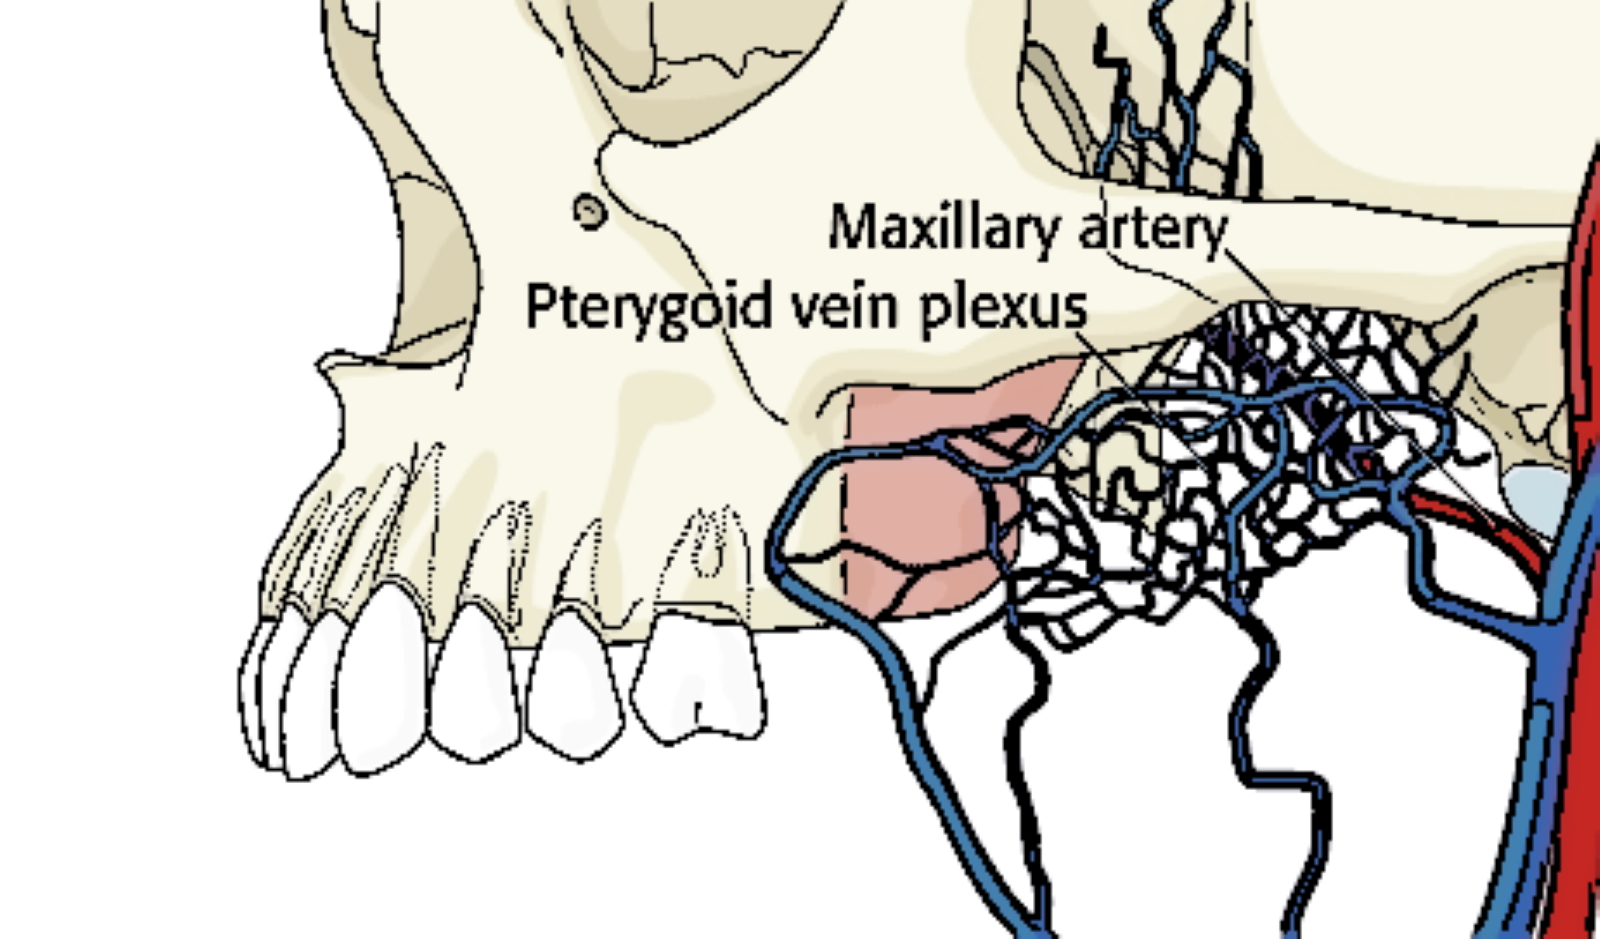 The figure shows the pterygoid venous plexus.